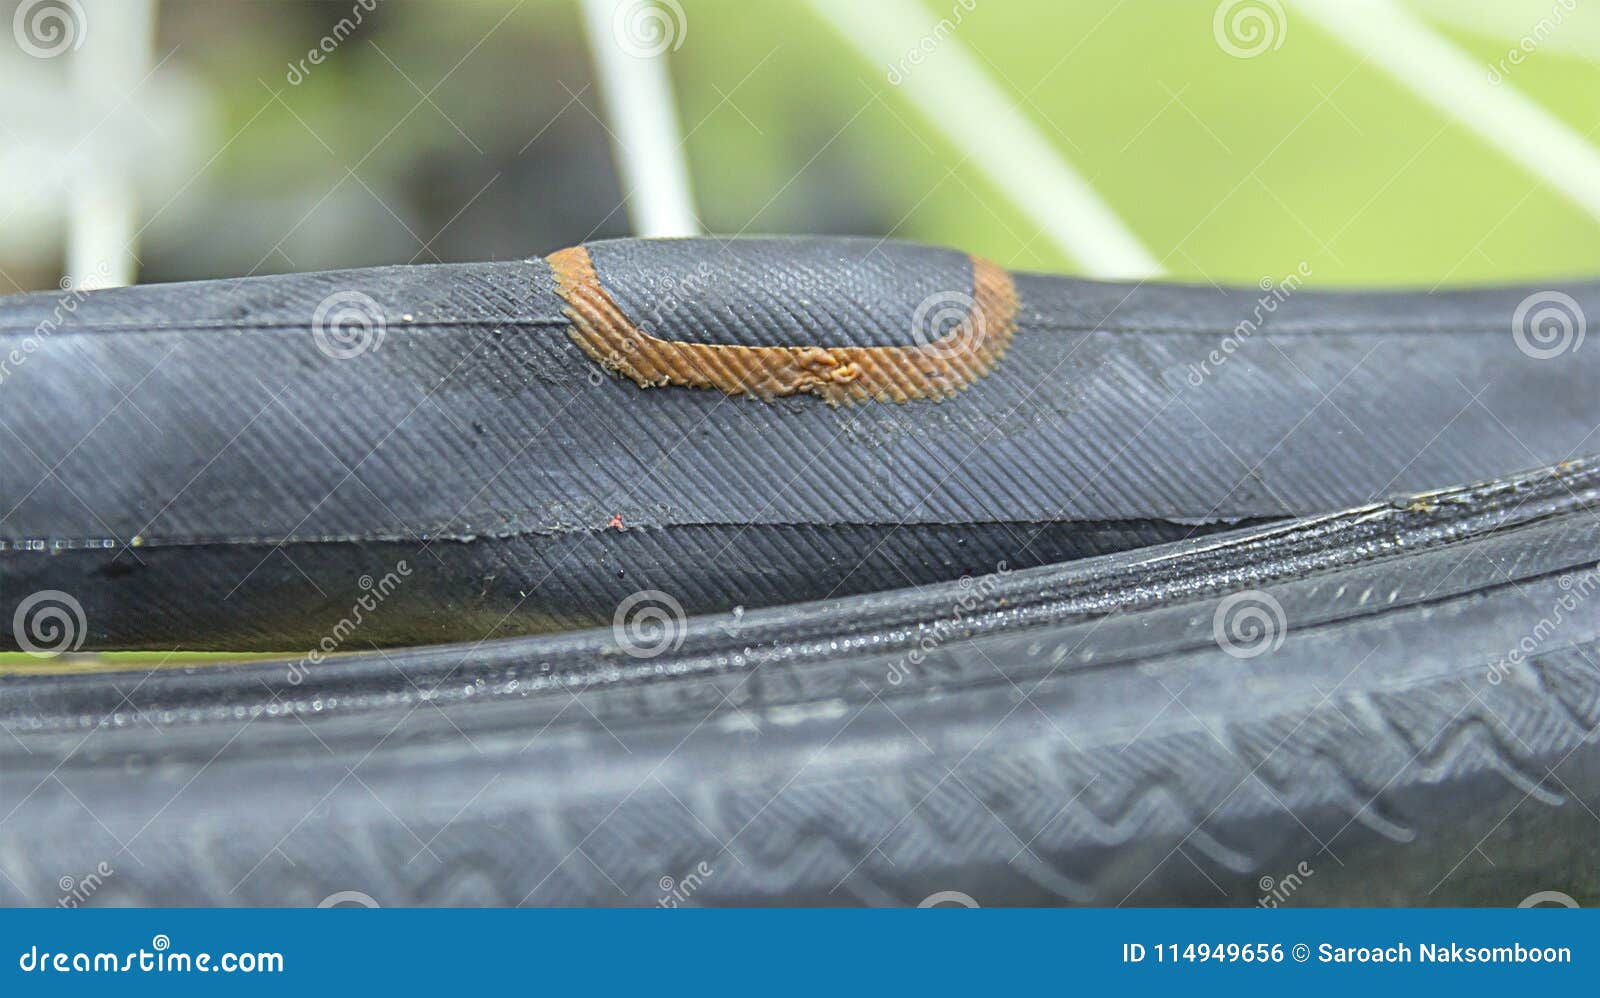 bike tube patch